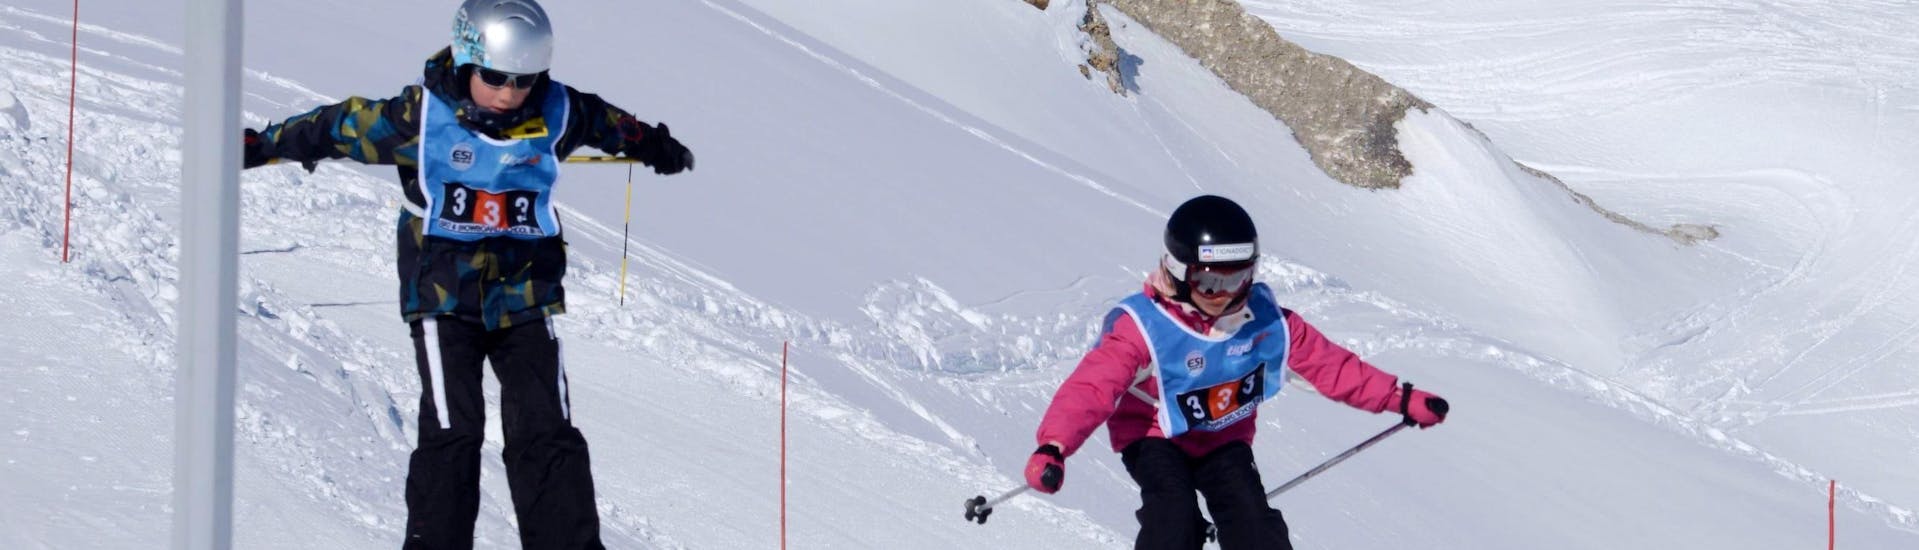 Zwei Kinder genießen ihren privaten Skikurs für Kinder aller Levels bei der Skischule 333.